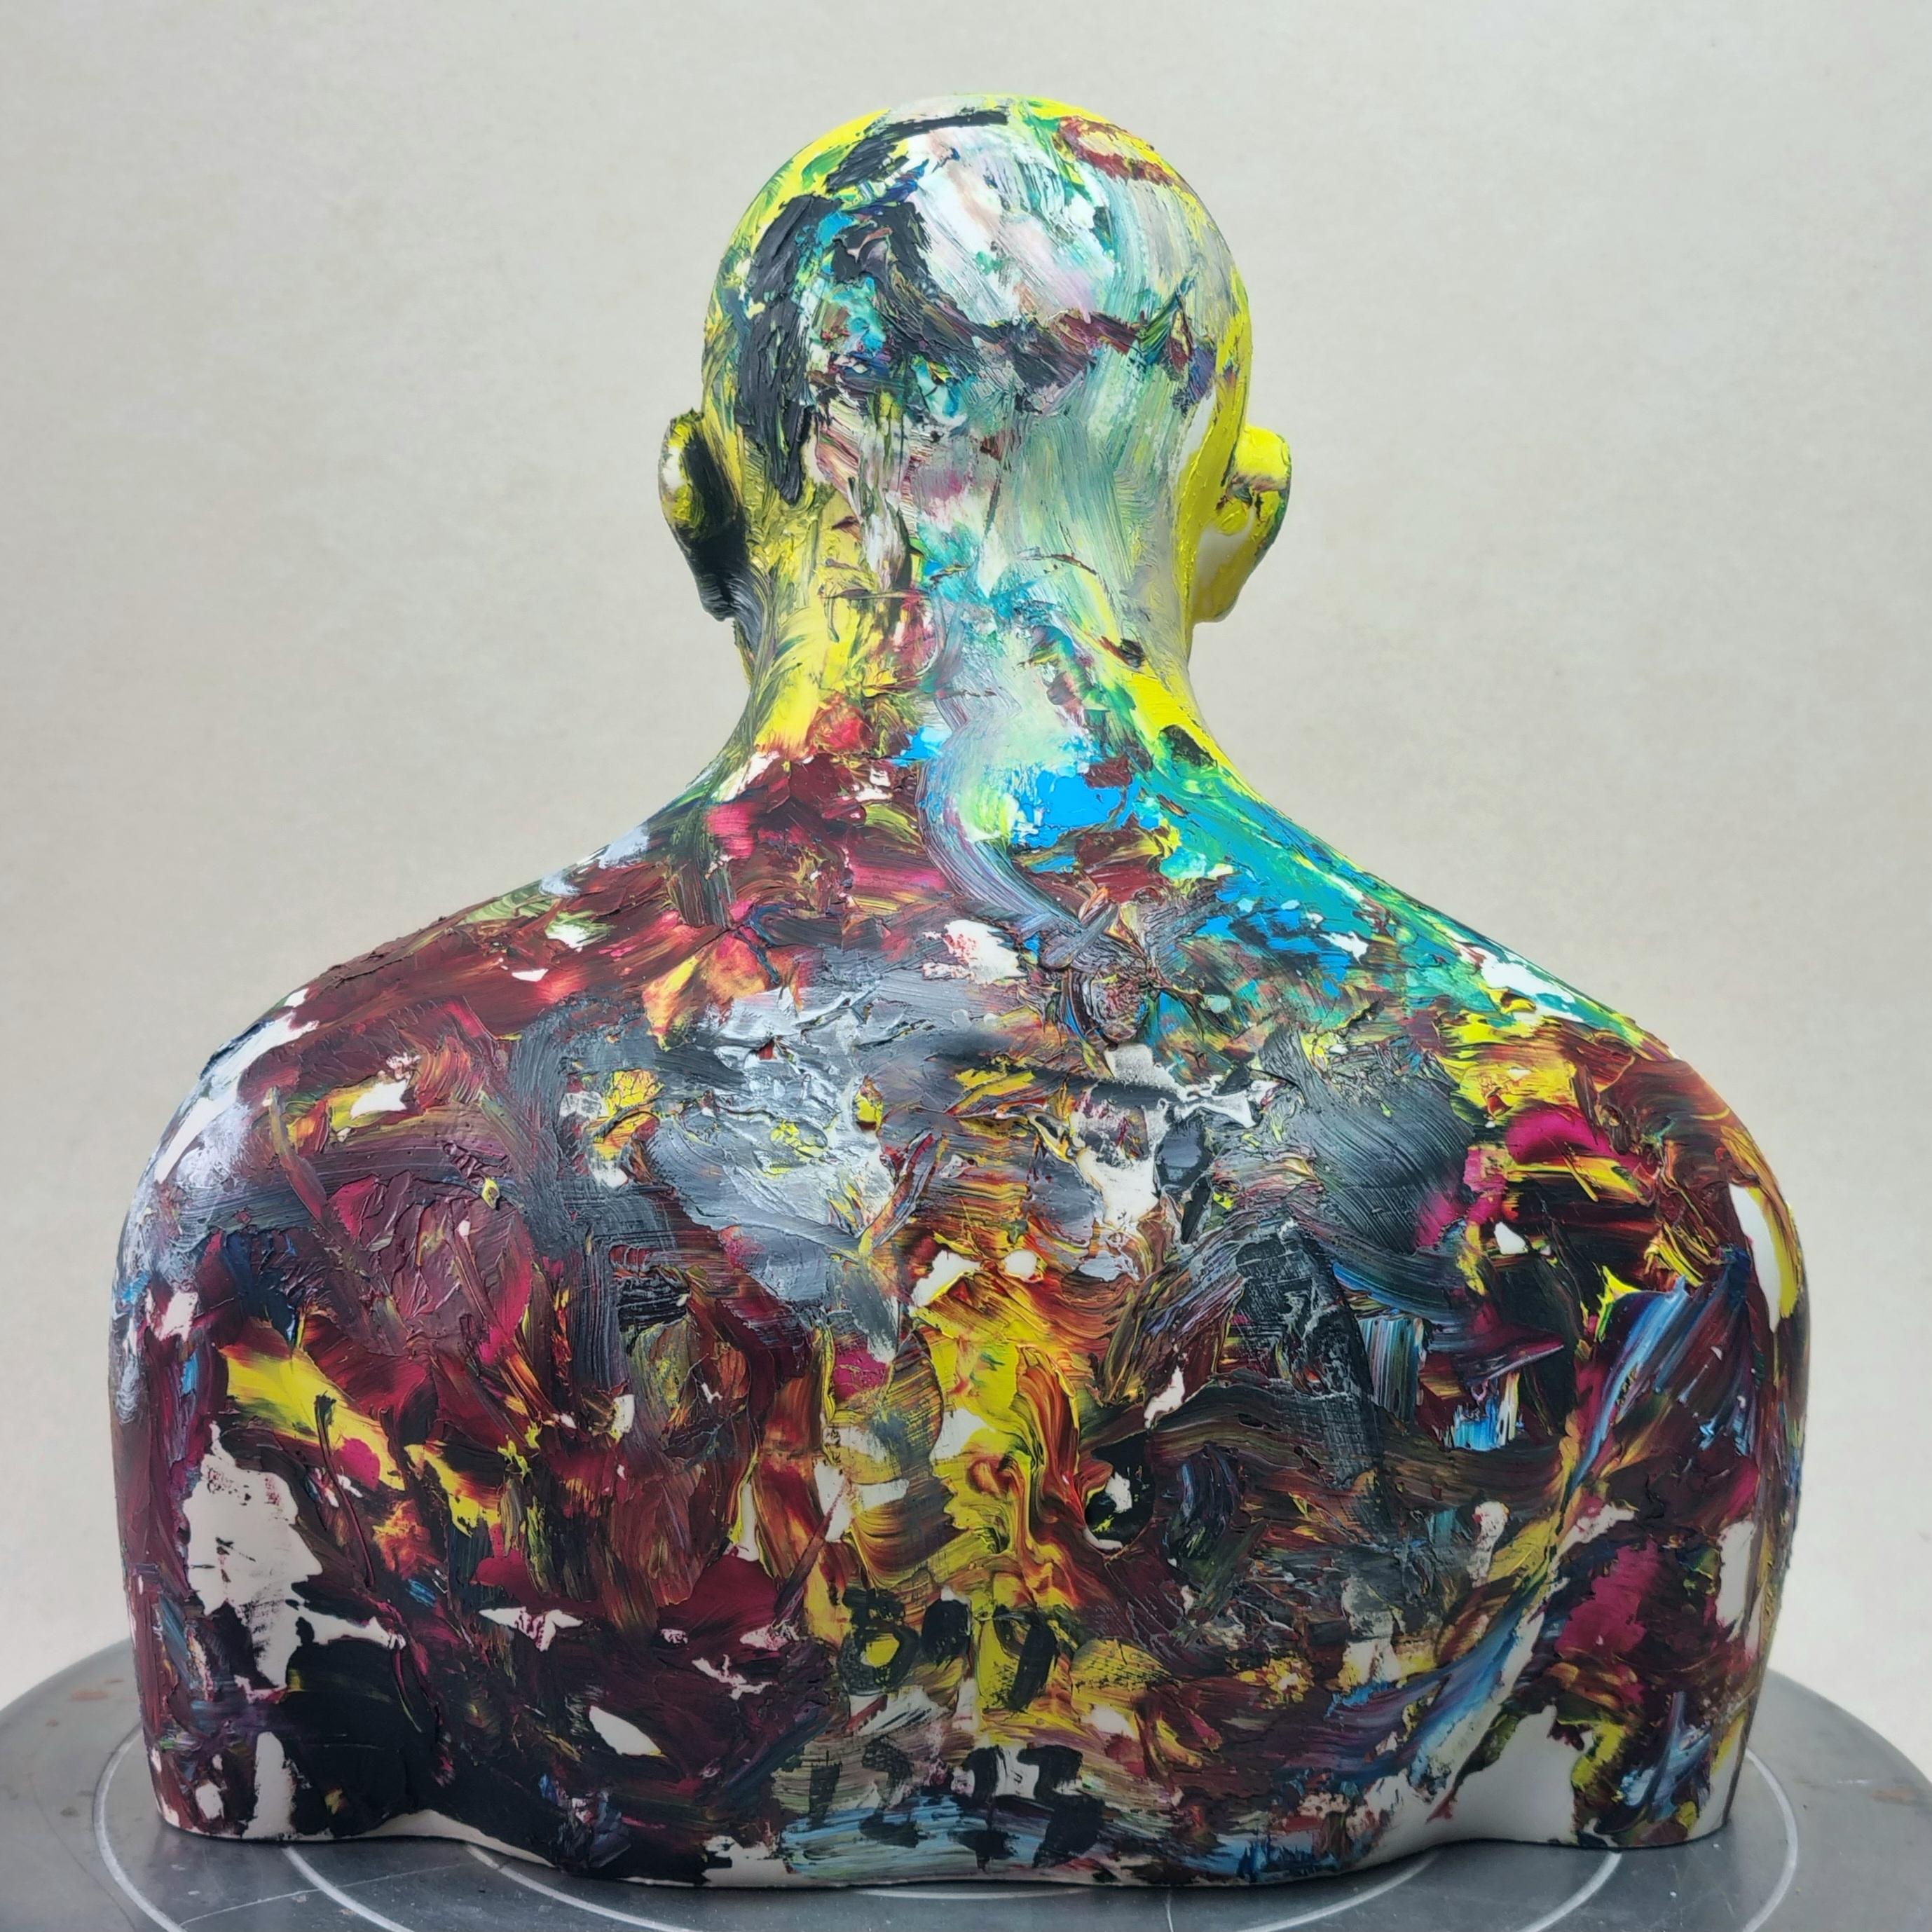 La escultura fue creada y moldeada por el artista utilizando Acrylic One (que es una conexión de resina acrílica de moldeo). A continuación, el artista pintó expresivamente esta escultura con pintura al óleo

Tomasz Bielak nació en Lublin en 1967.